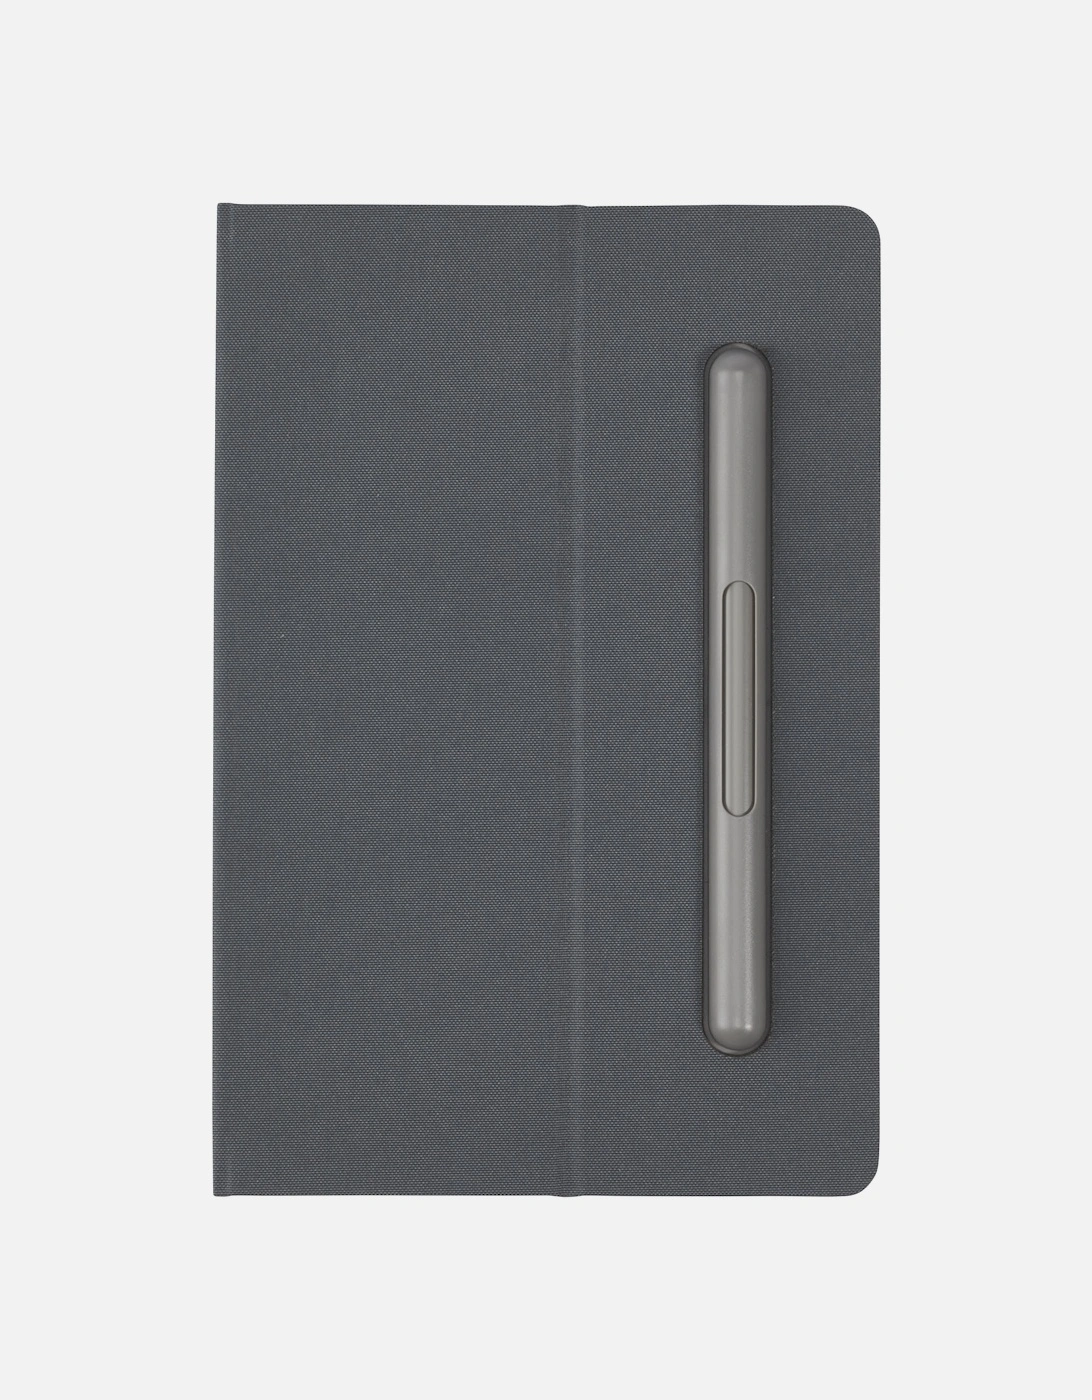 Skribo Notepad And Pen Set